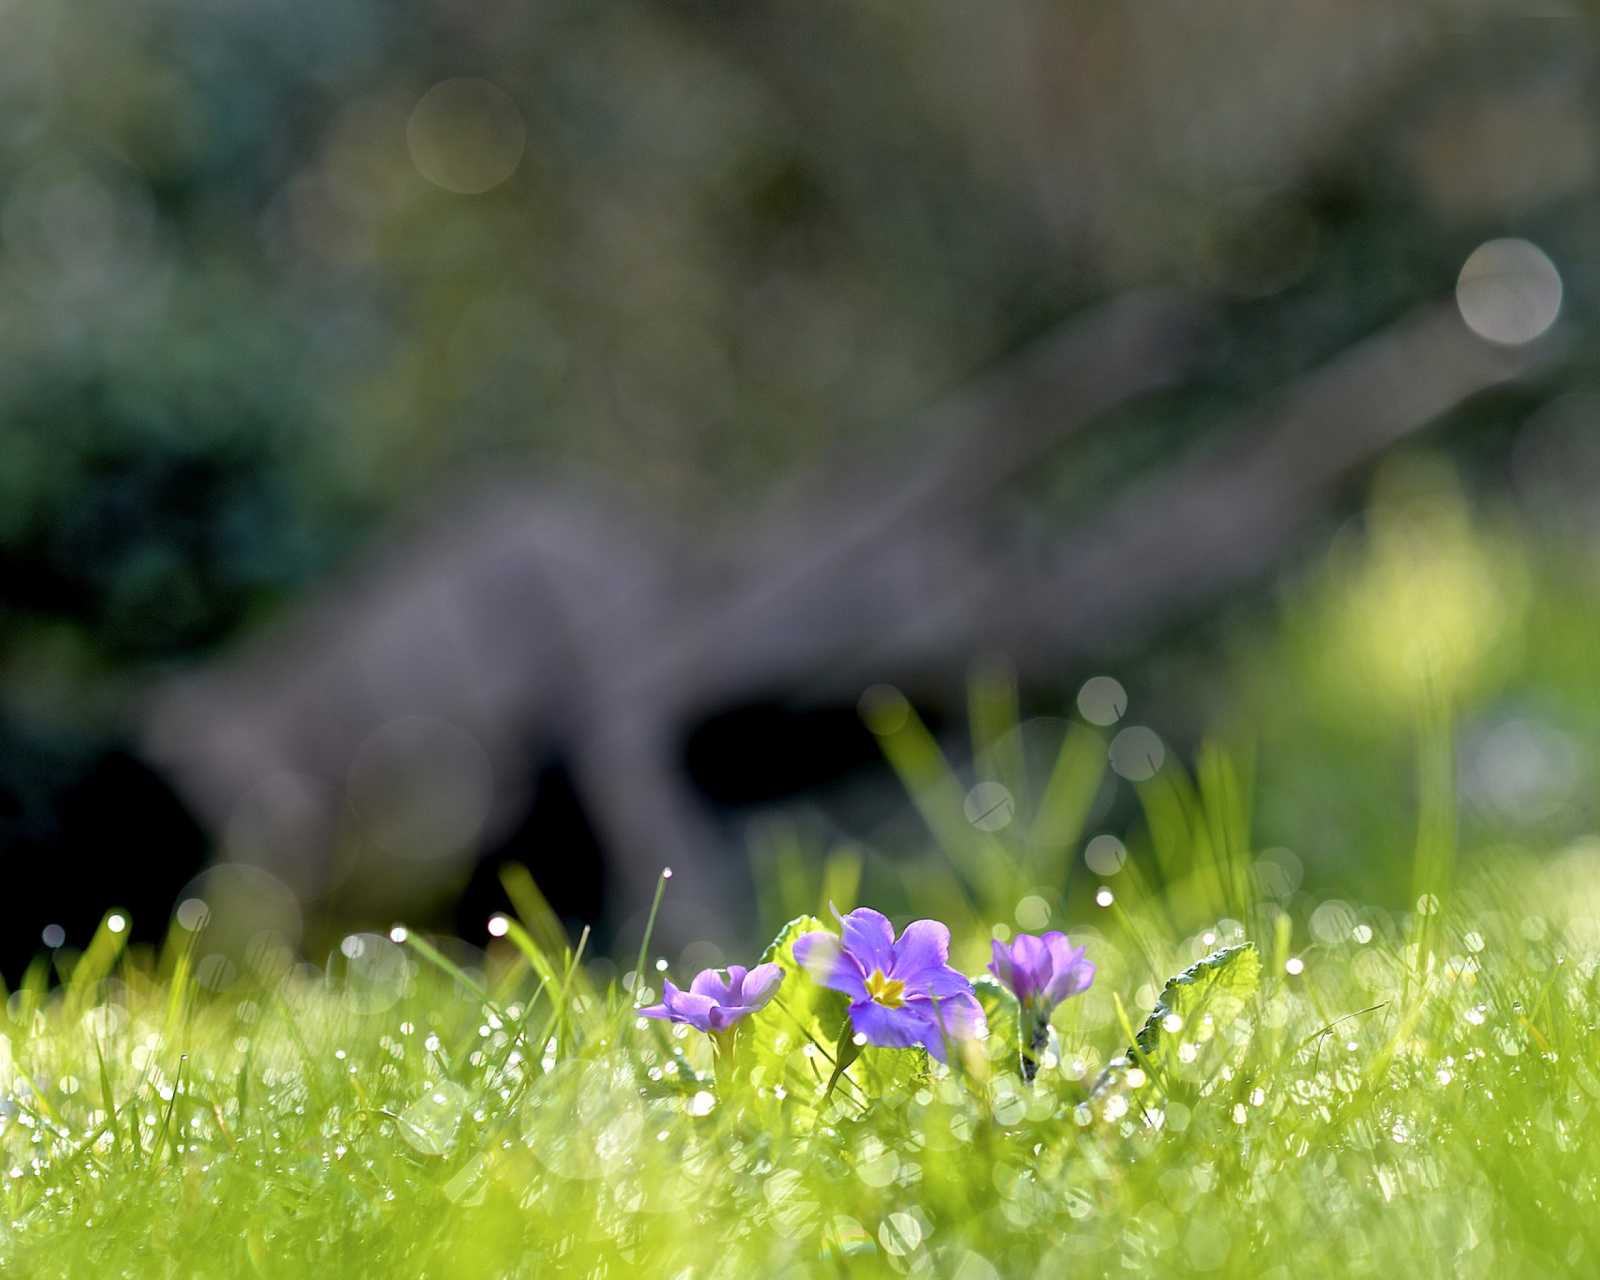 Grass and lilac flower screenshot #1 1600x1280